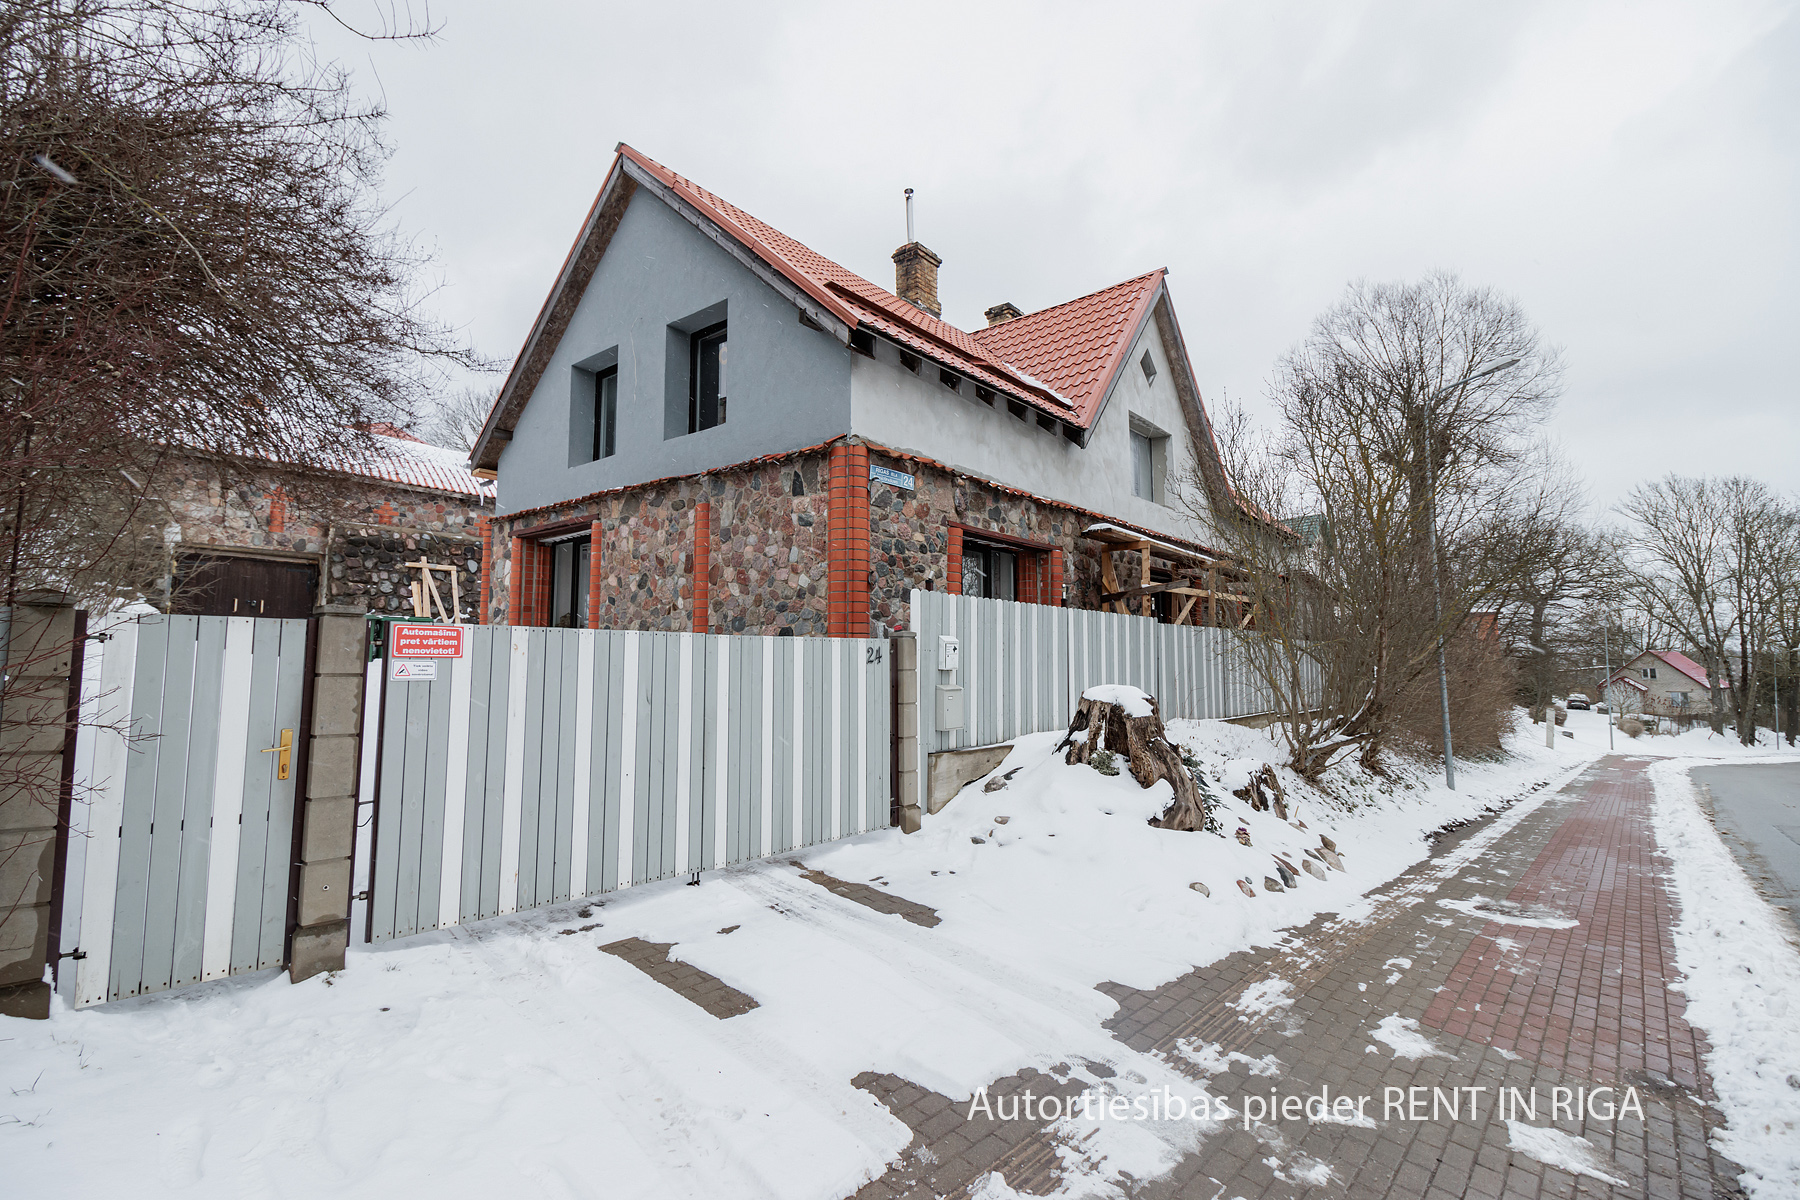 Продают дом, улица Rīgas - Изображение 1